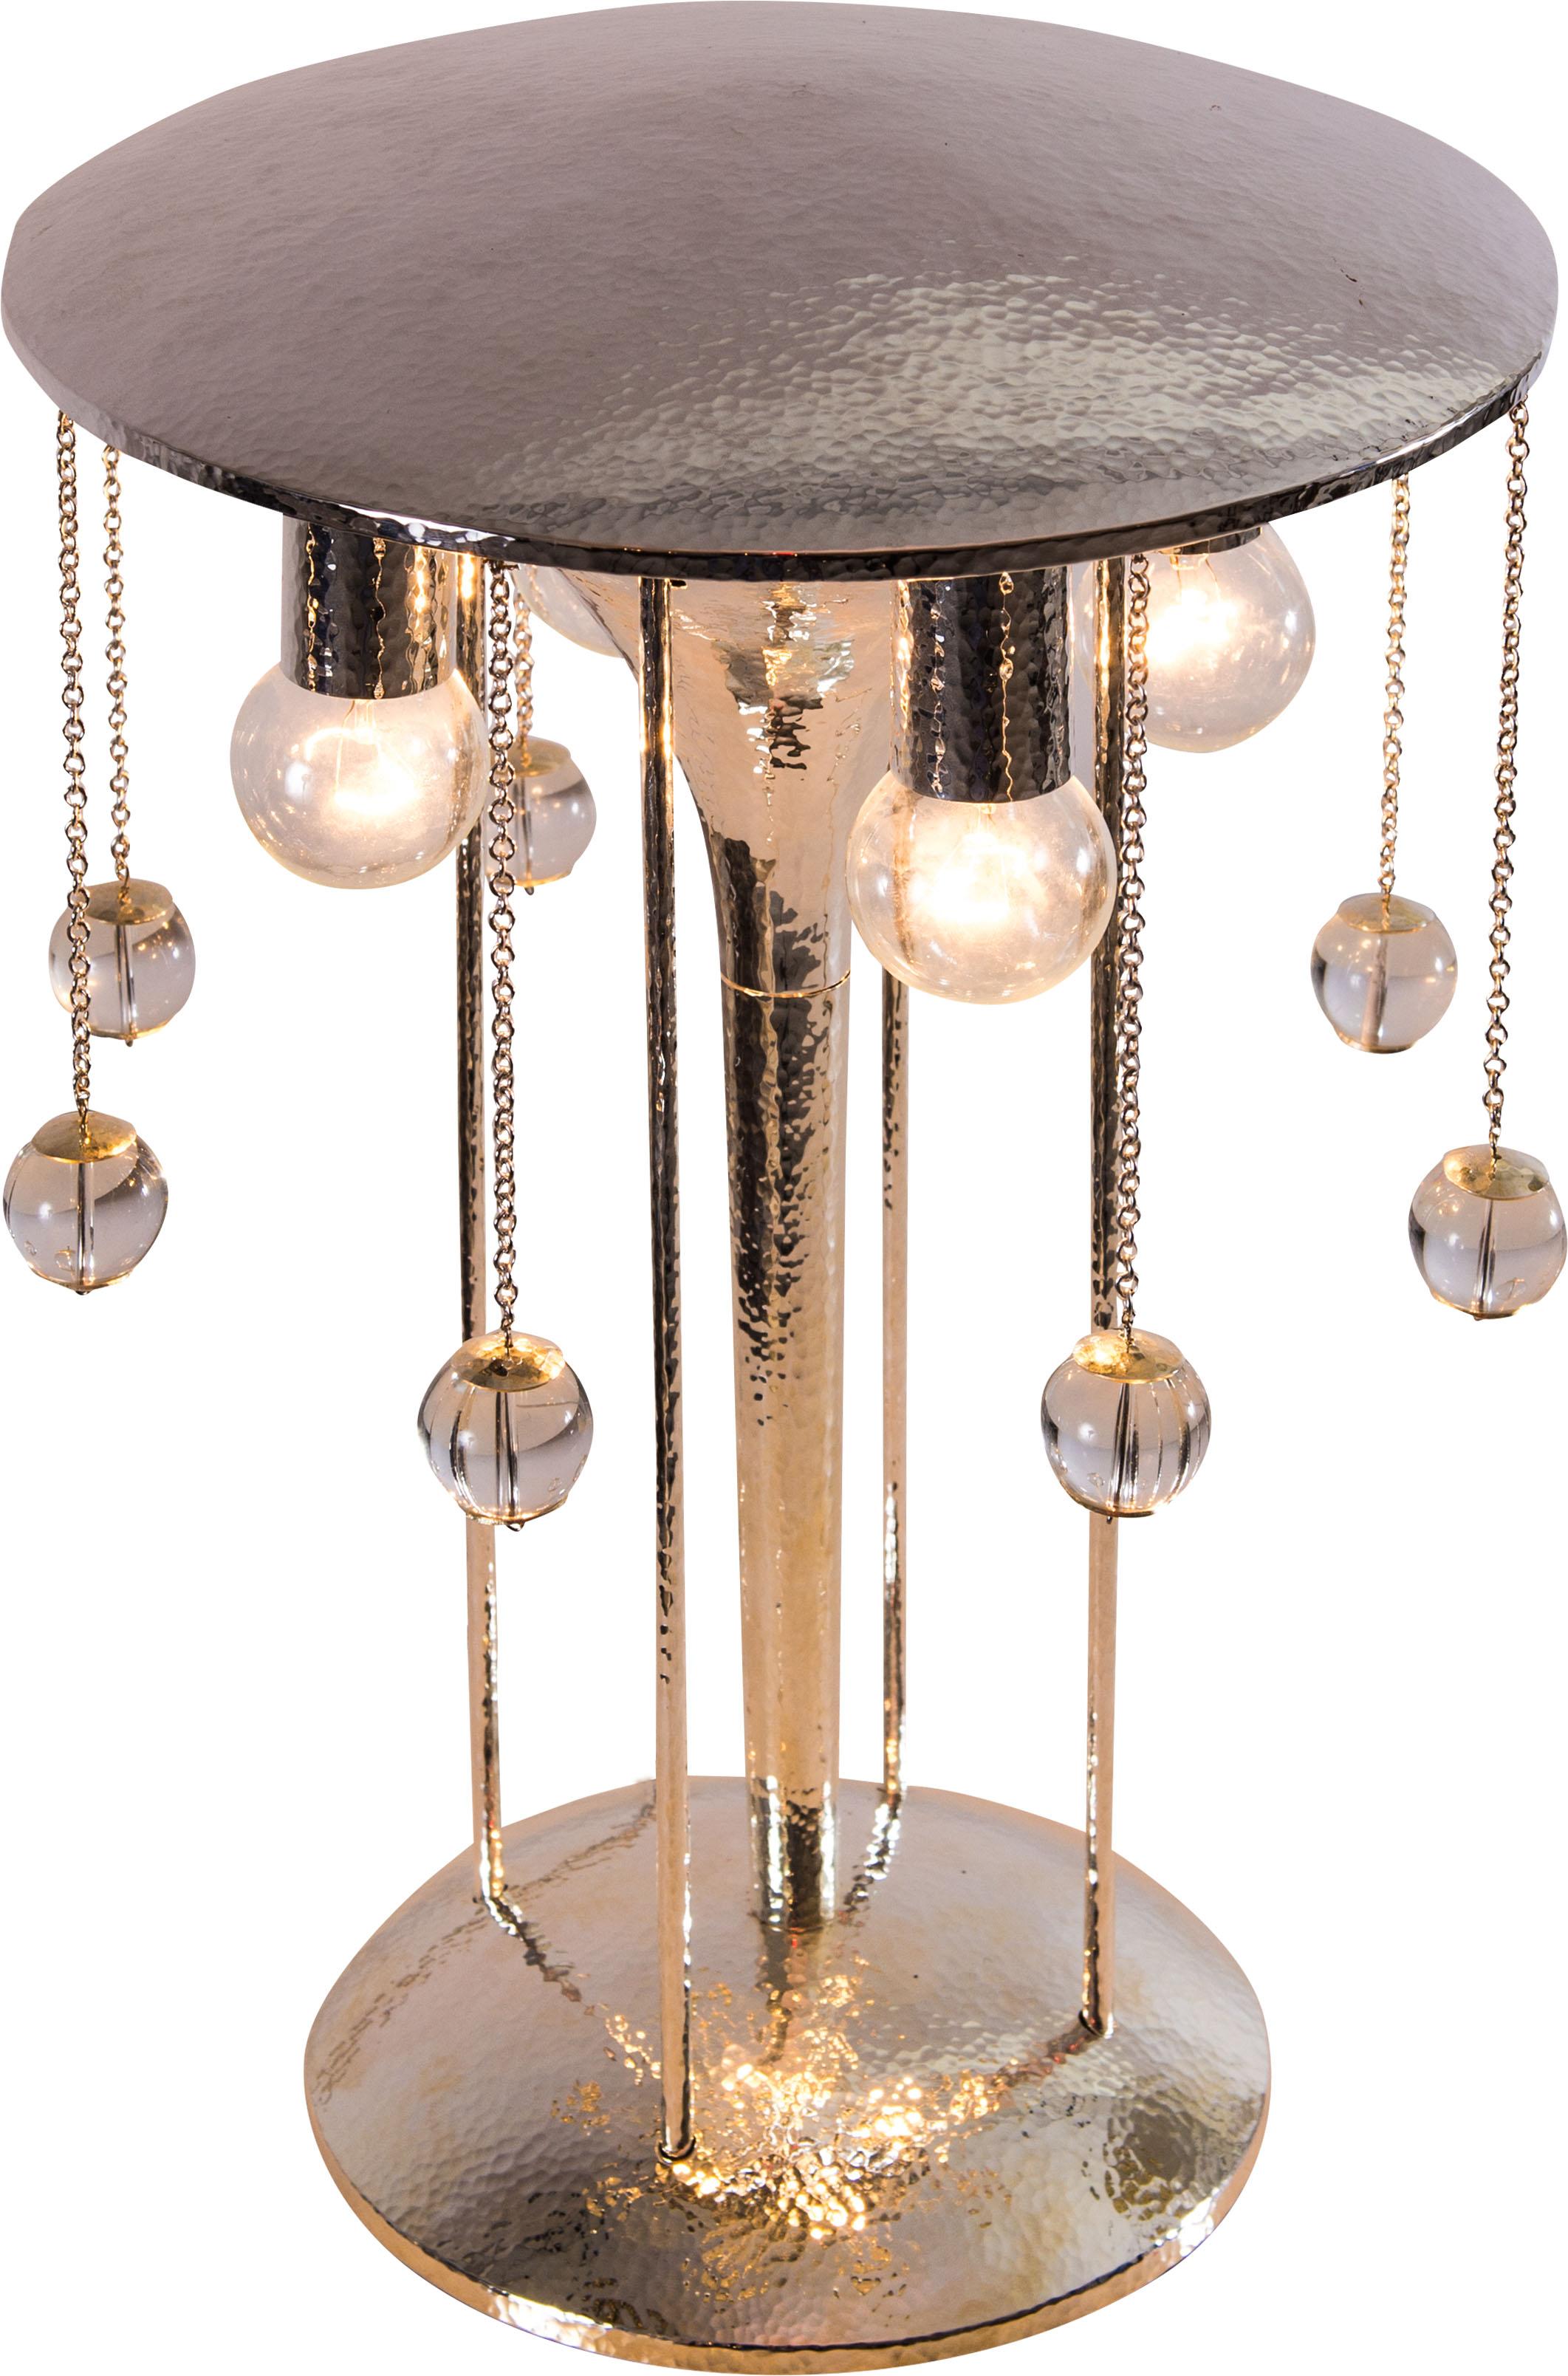 Wunderschöne, sehr elegante Tischlampe, versilbertes Messing, das Original ist in der Galerie 910 im Metropolitan Museum New York ausgestellt. Auch in einer schlichten, nicht geschmiedeten Version erhältlich.
MATERIAL: Versilbertes Messing,